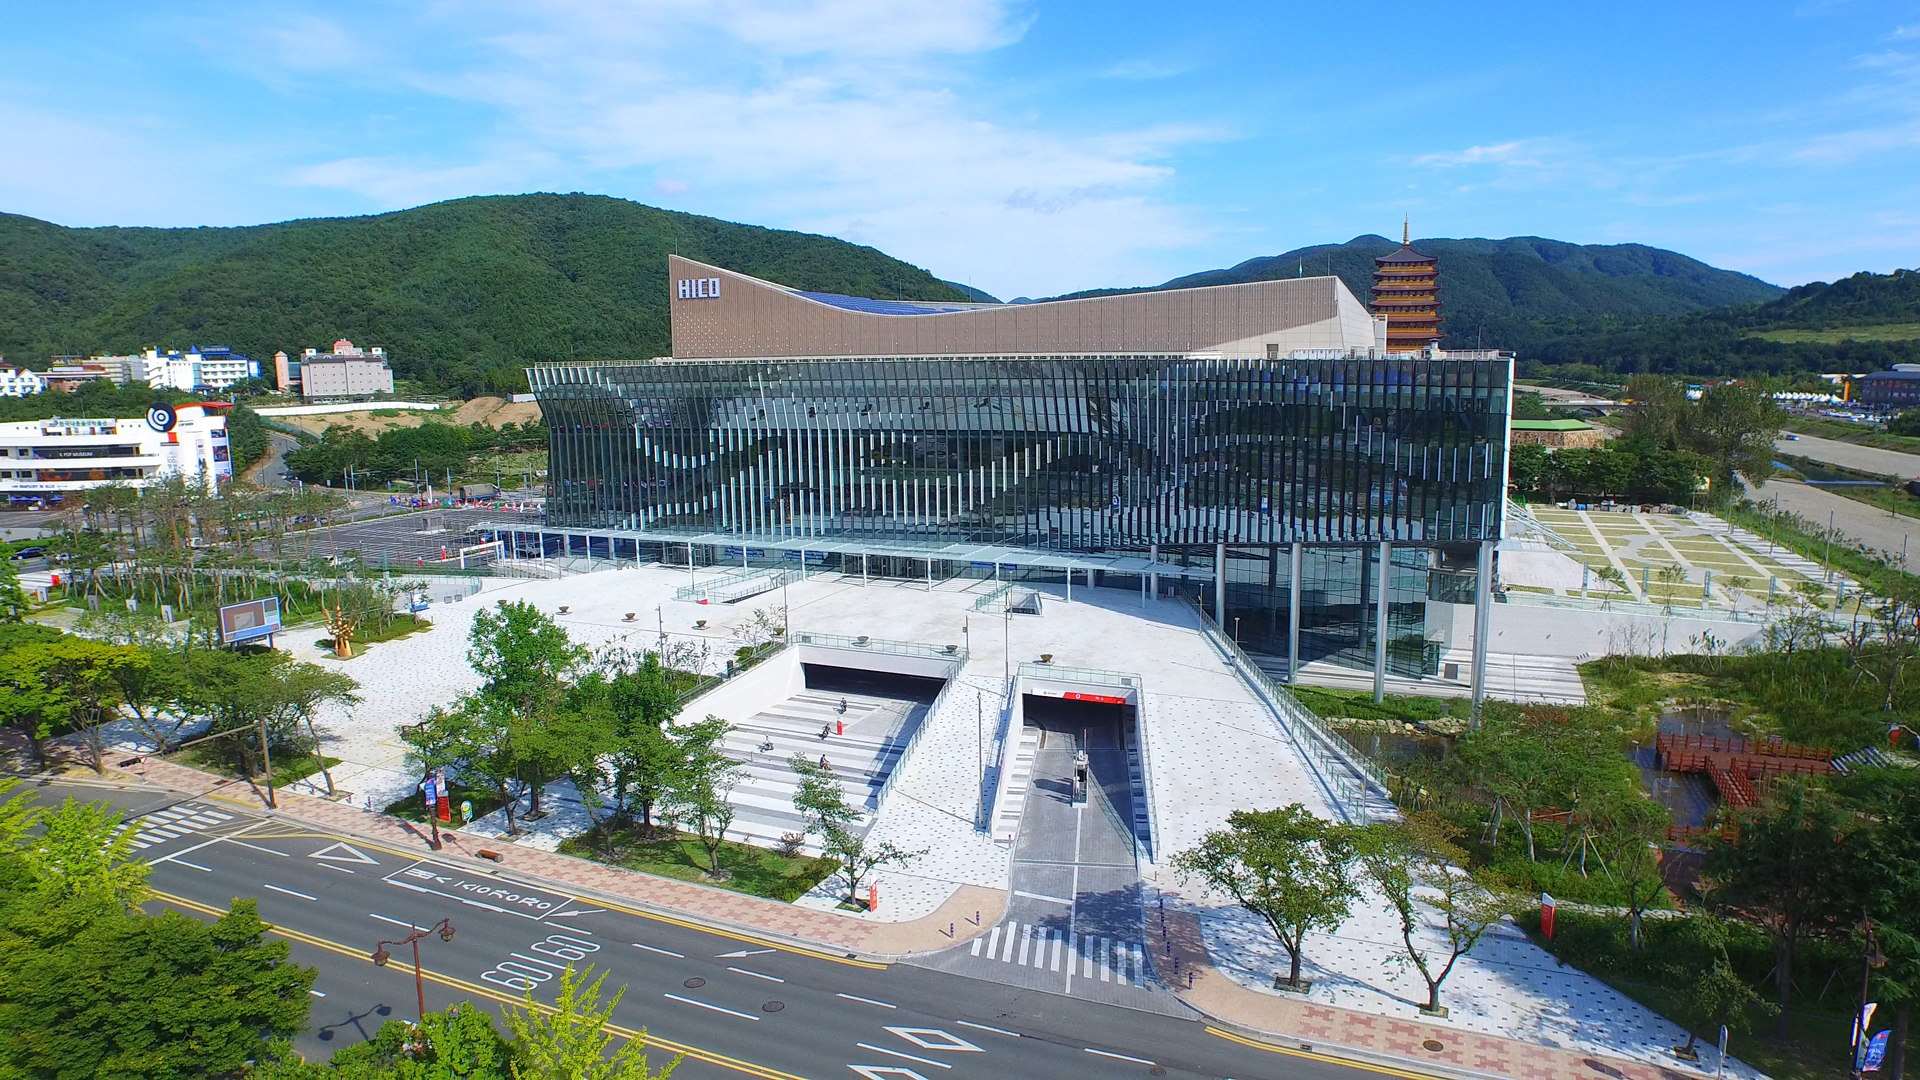 경주 하이코, 2016년도 학술대회 개최목적지로 급부상